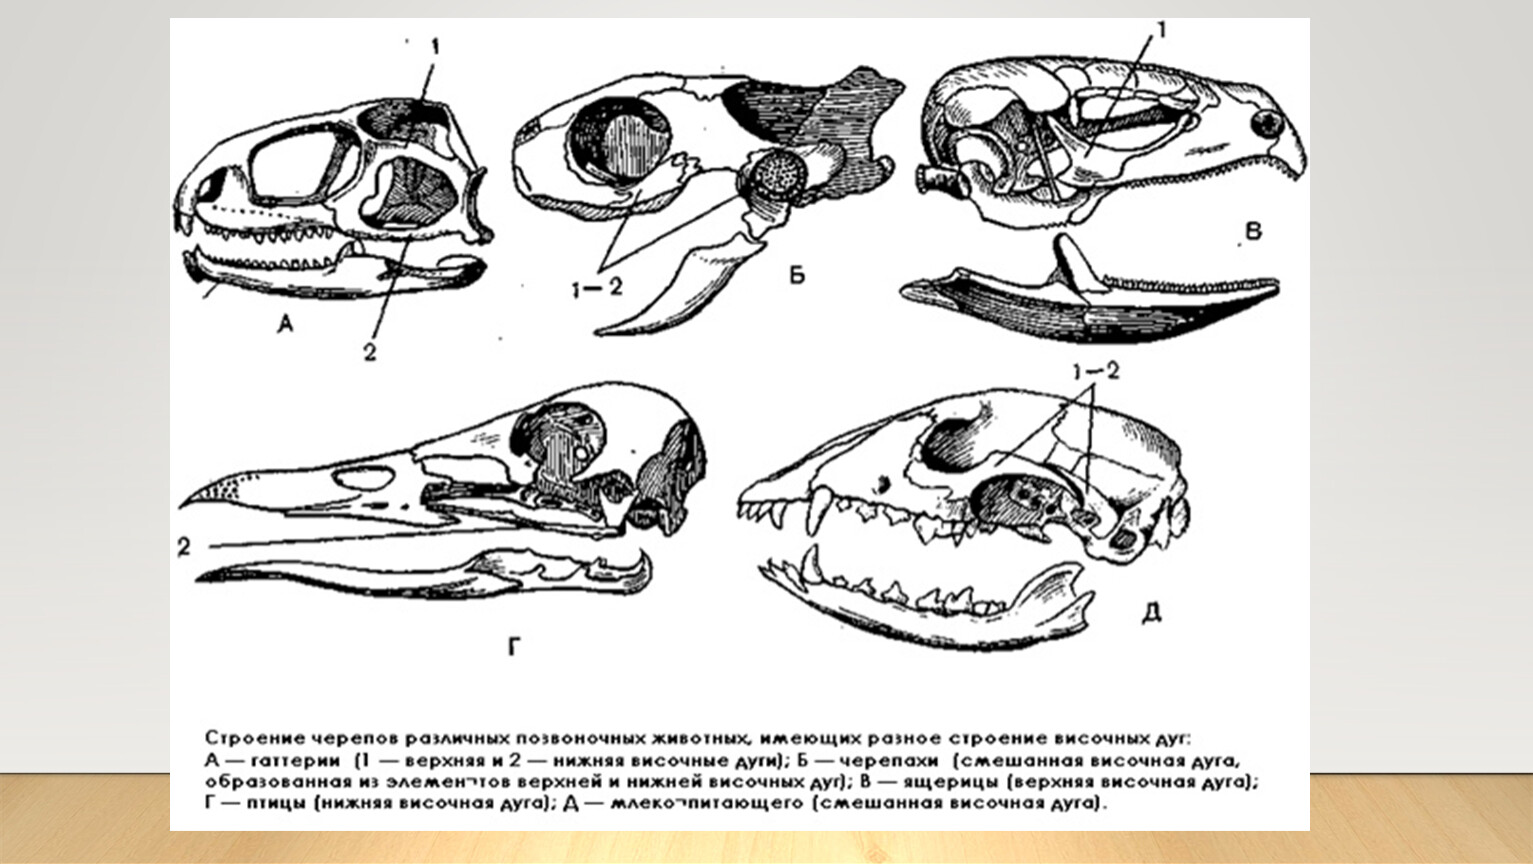 Отличия черепа ящерицы и собаки. Филогенез черепа позвоночных. Эволюция висцерального черепа позвоночных. Филогенез висцерального черепа позвоночных. Эволюция скелета черепа у позвоночных.